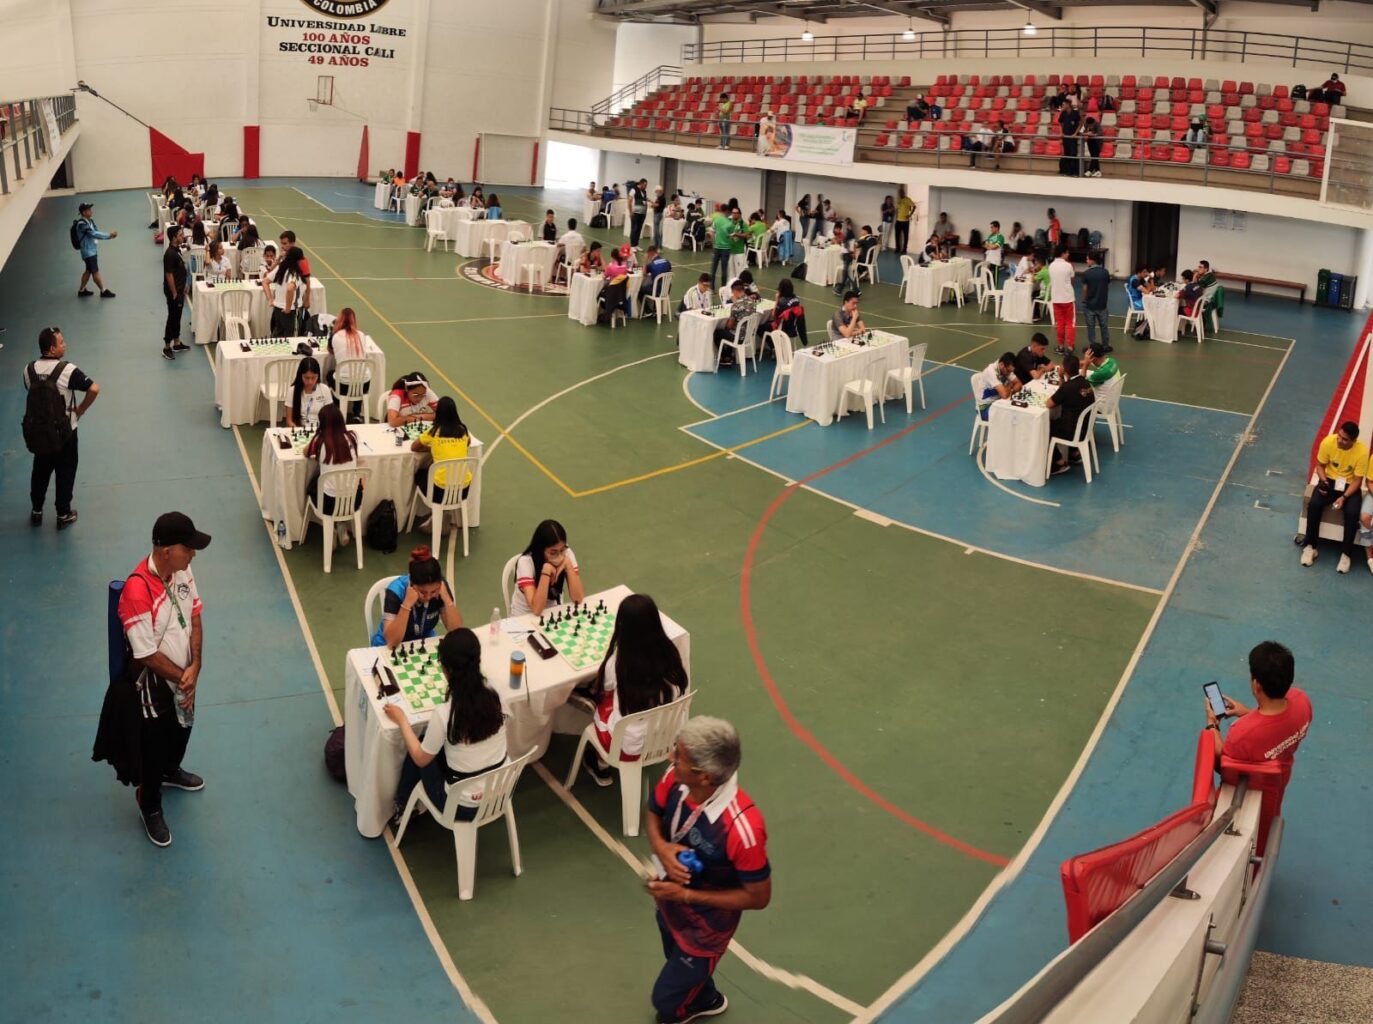 Estudiantes de diferentes universidades del país en el coliseo de la Universidad Libre, seccional Cali, participando en los Juegos Nacionales Universitarios en la disciplina de Ajedrez.